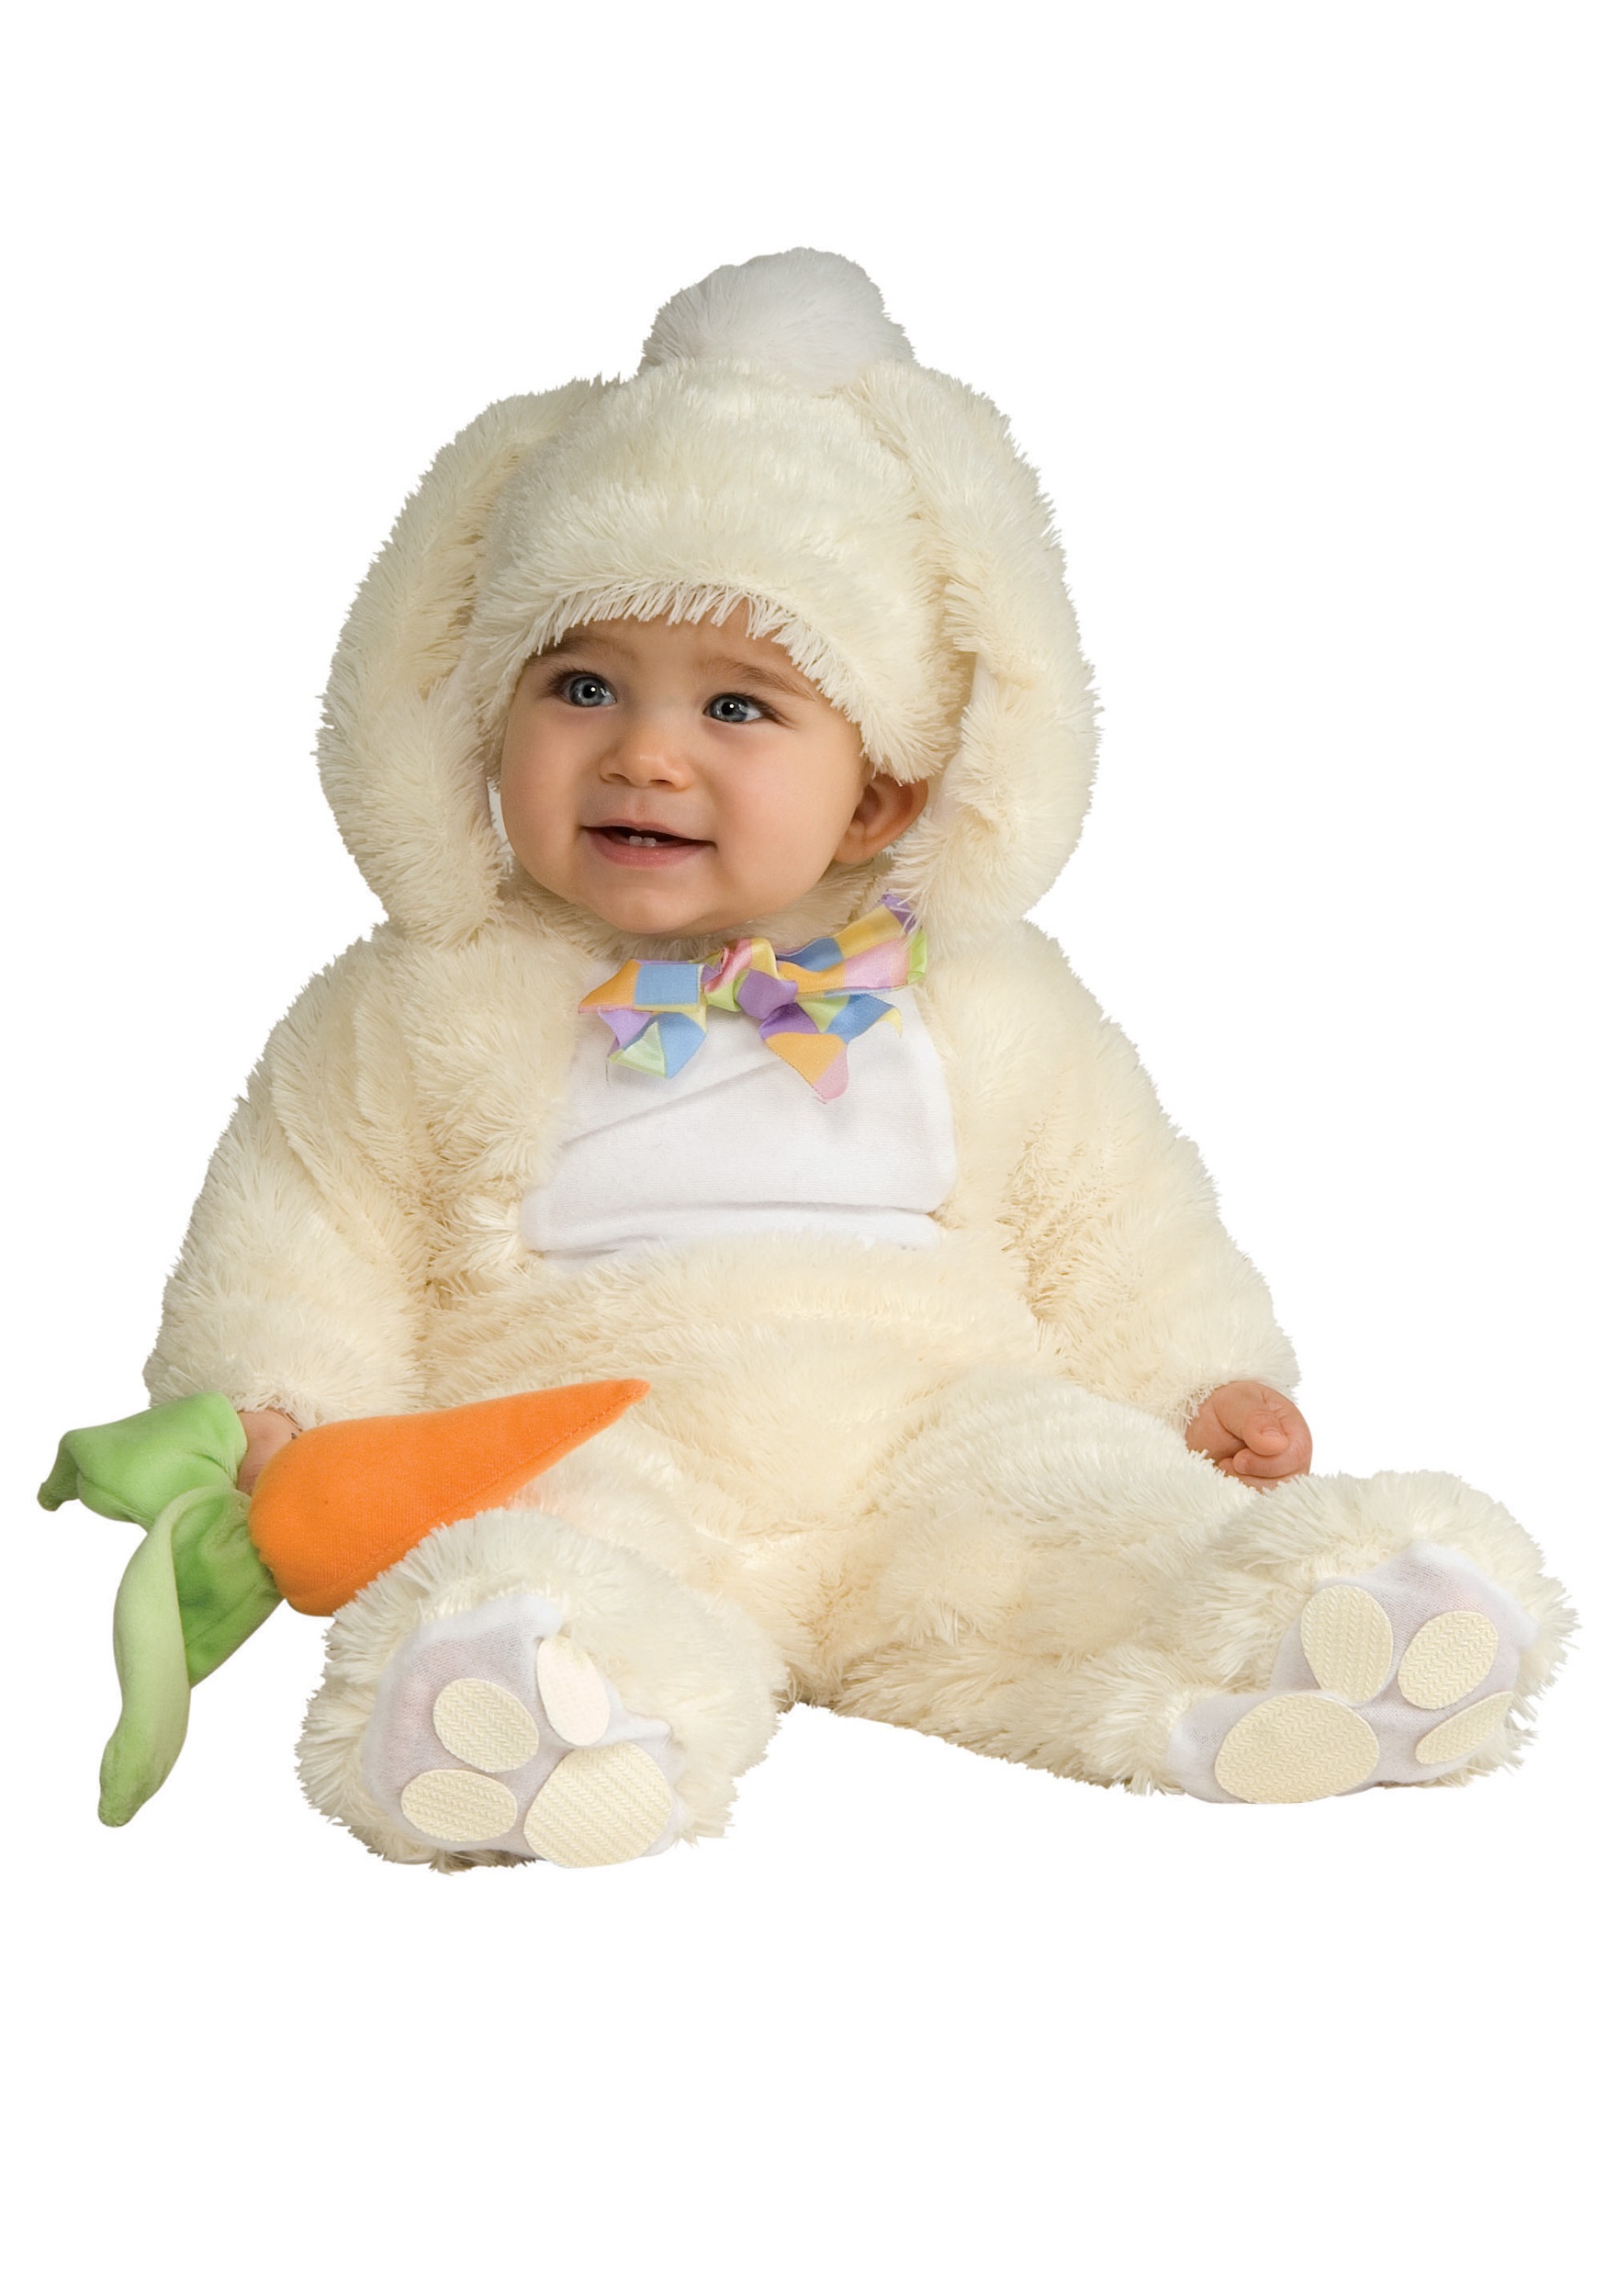 rabbit dress for baby girl